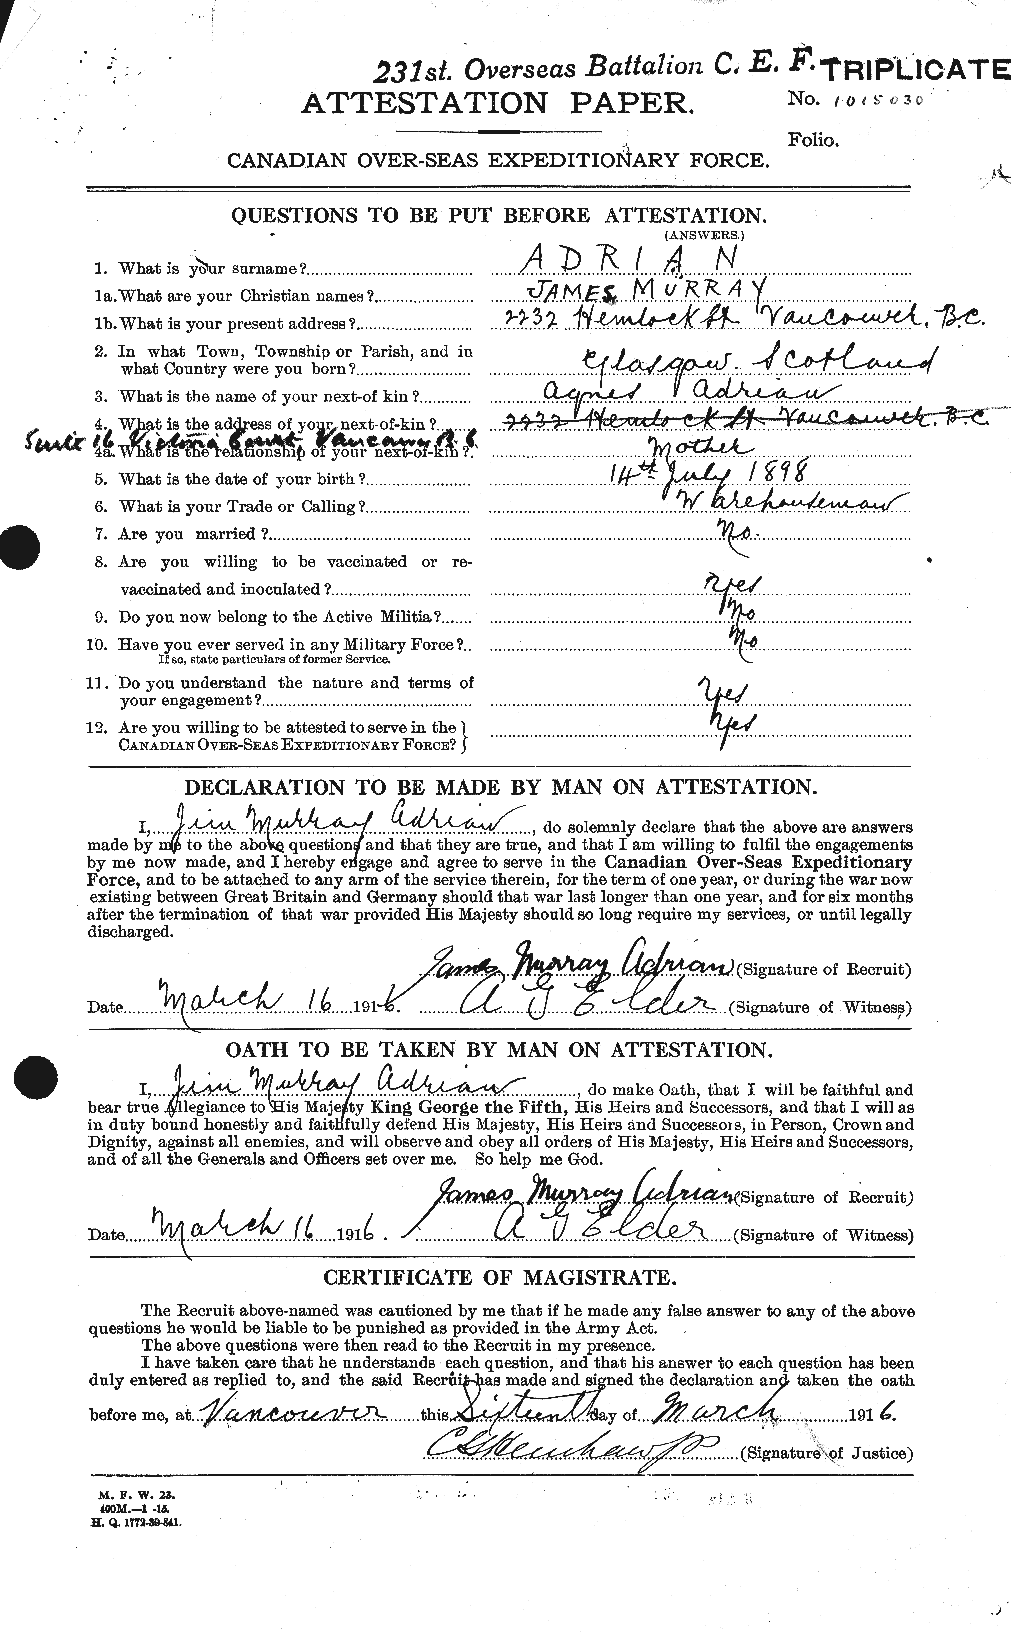 Dossiers du Personnel de la Première Guerre mondiale - CEC 202910a